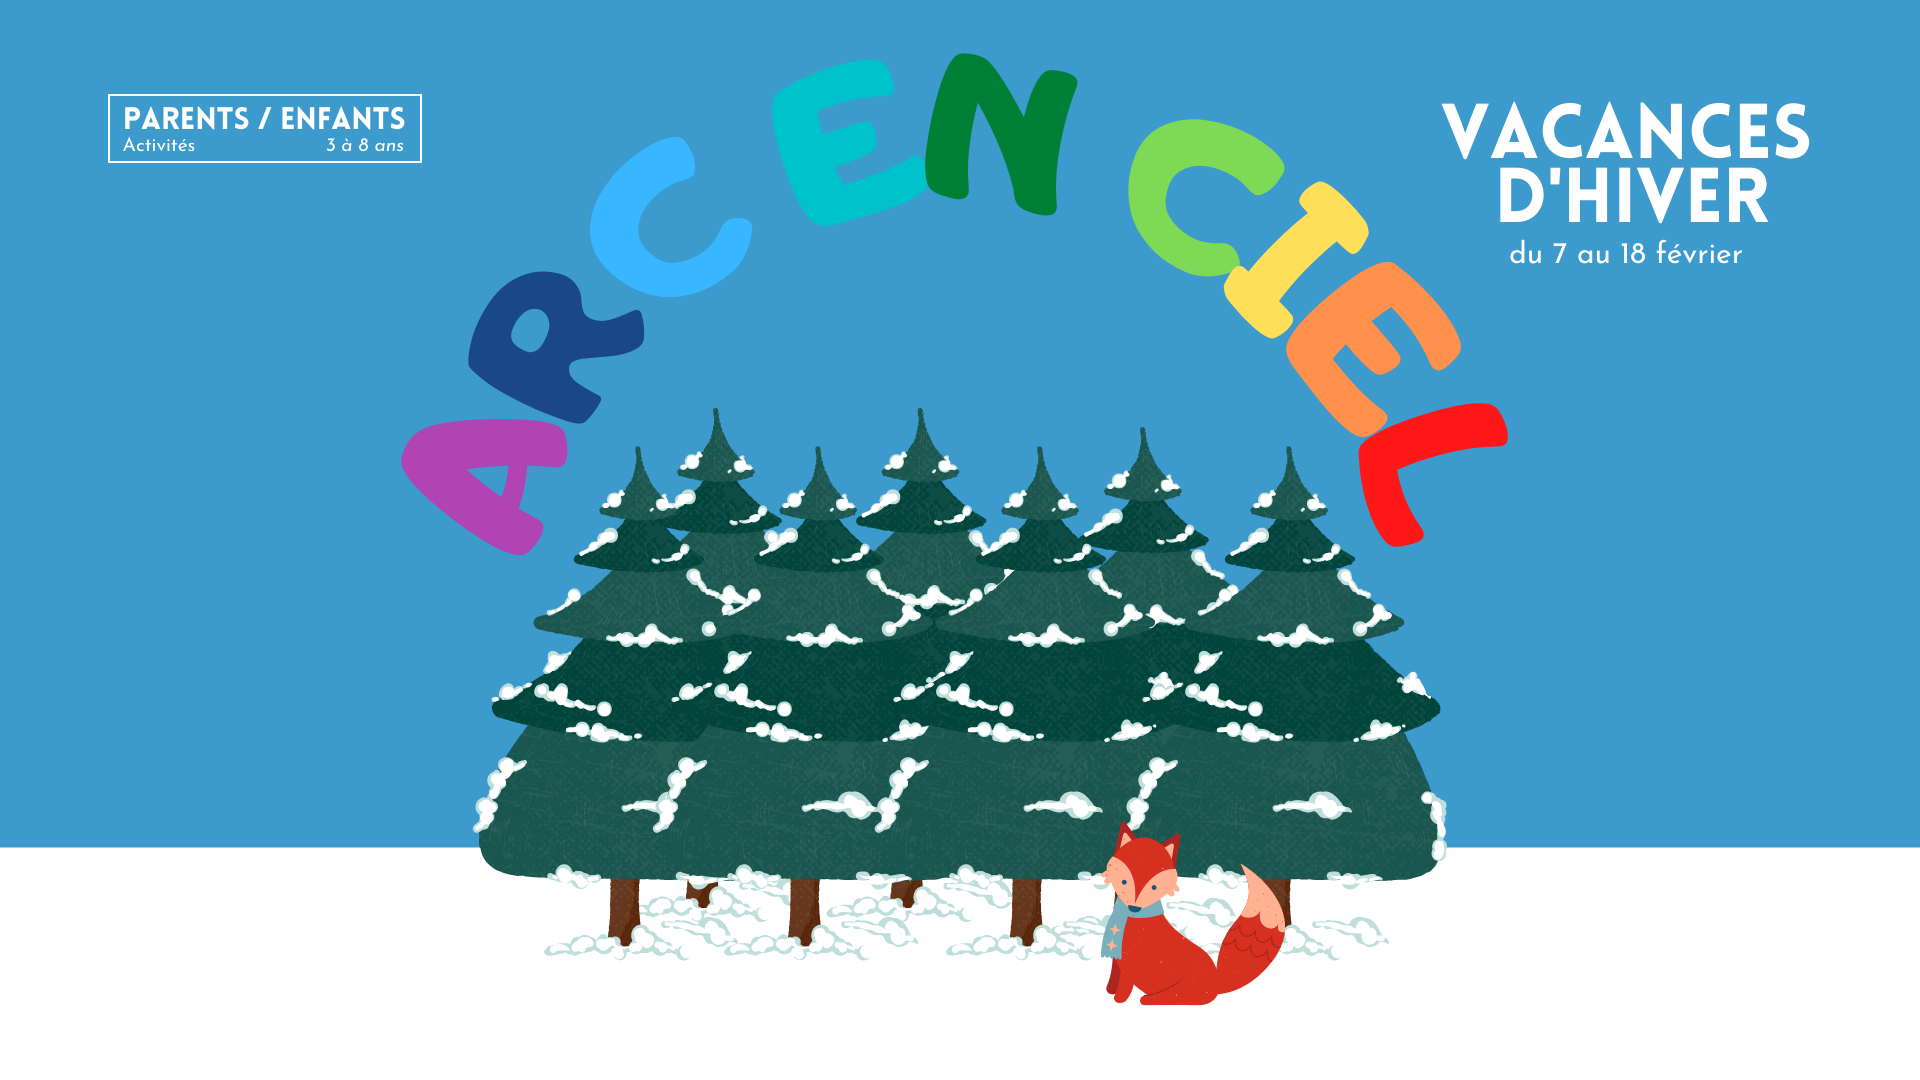 You are currently viewing Planning des vacances d’hiver 2022 – Arc en Ciel – Parents/Enfants